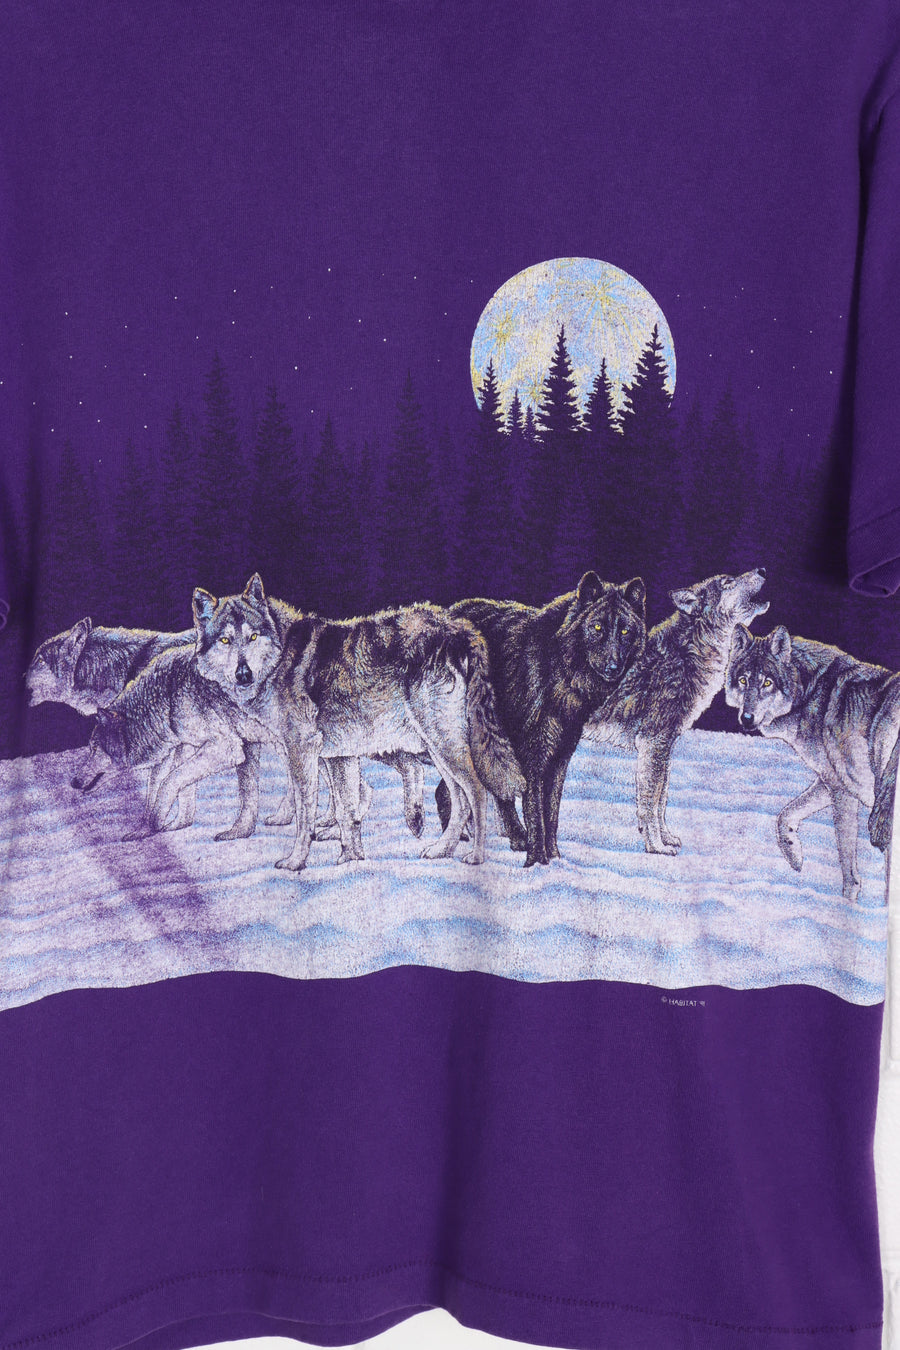 1991 Vintage Habitat Purple Wolves & Moon All Over Single Stitch Tee (M)